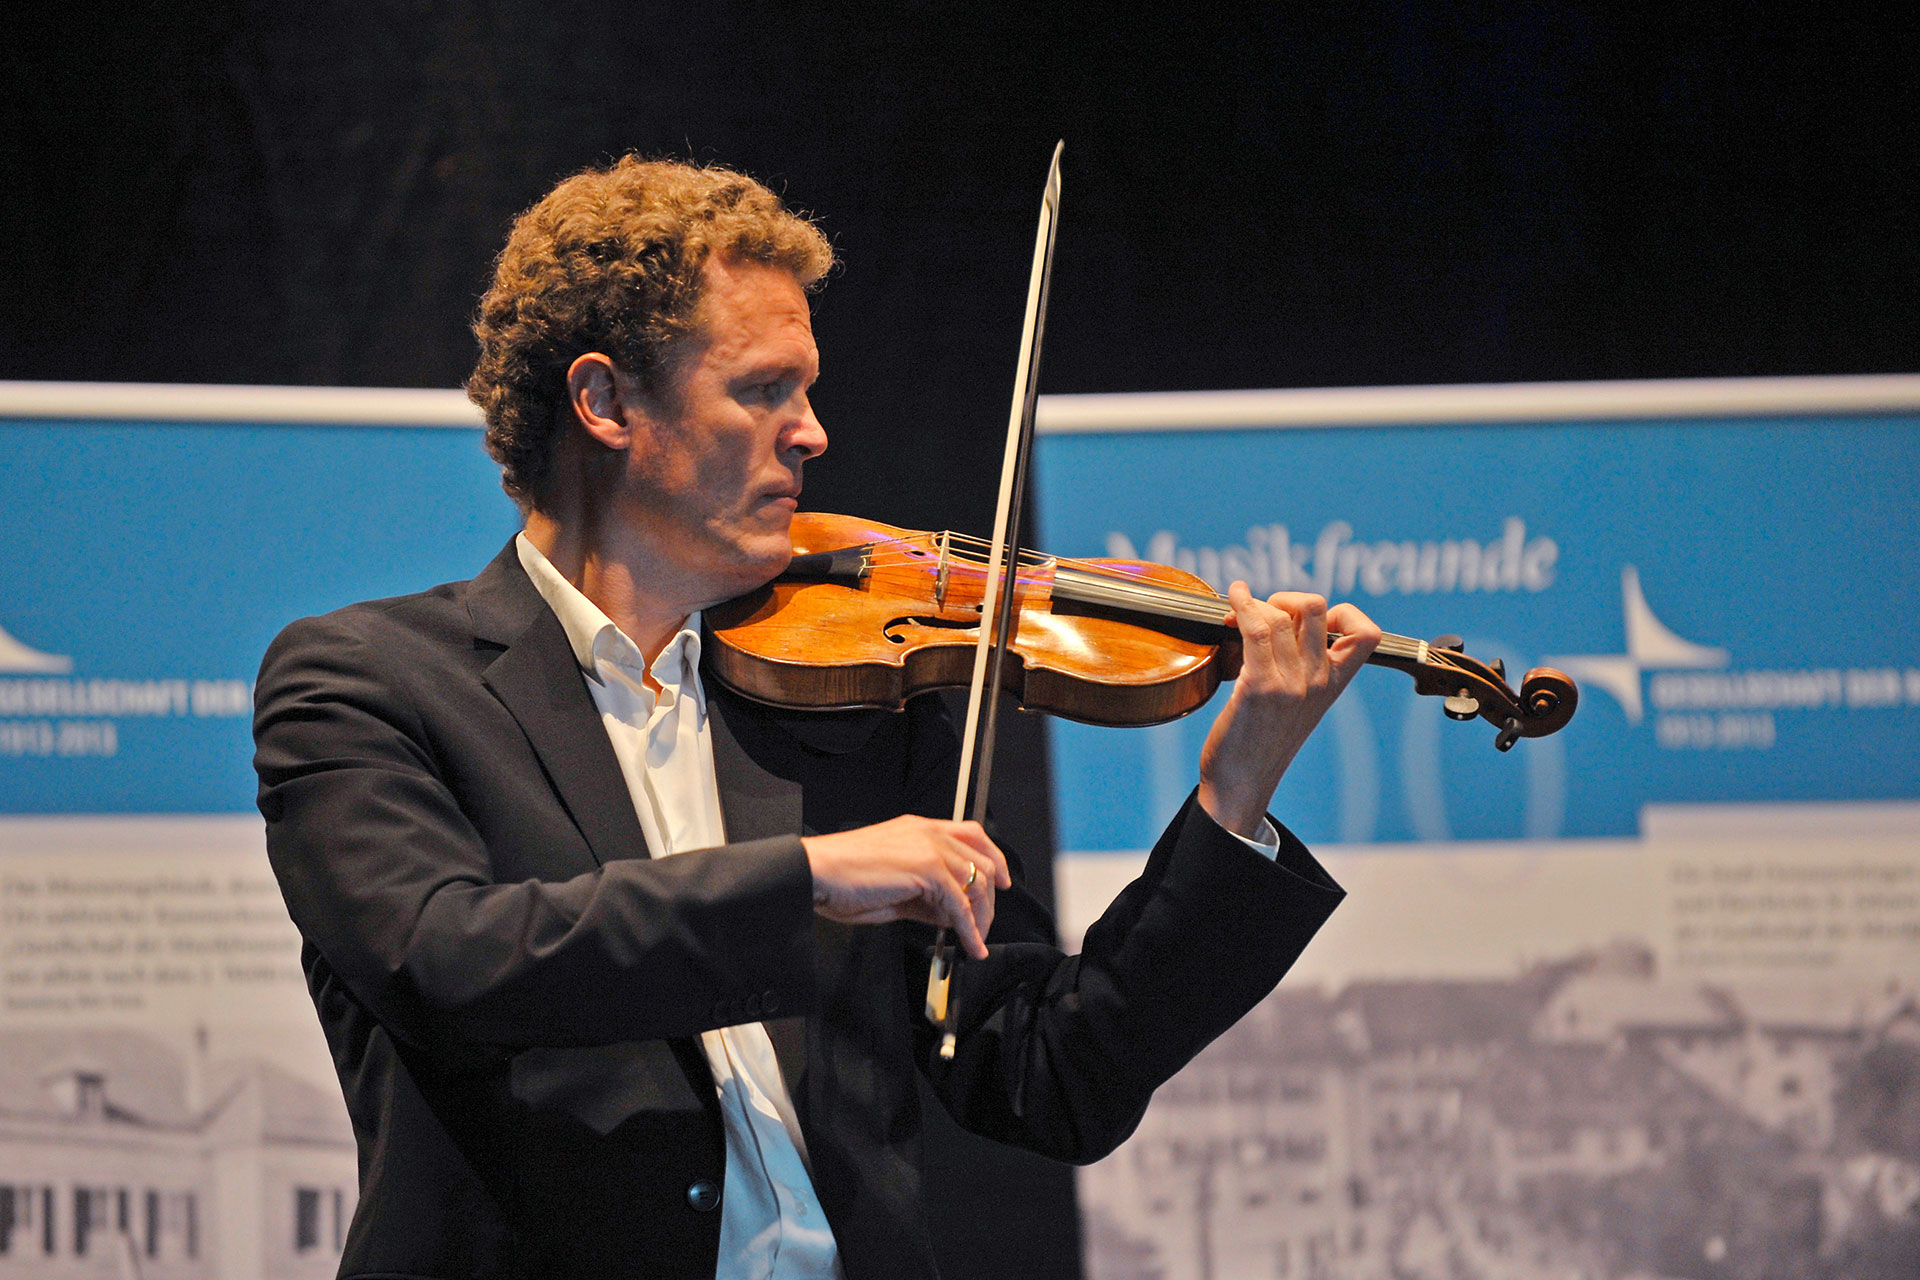 Georg von der Golz vom Freiburger Barock Orchester im Rahmen der Diskussionsrunde am 29.9.2013